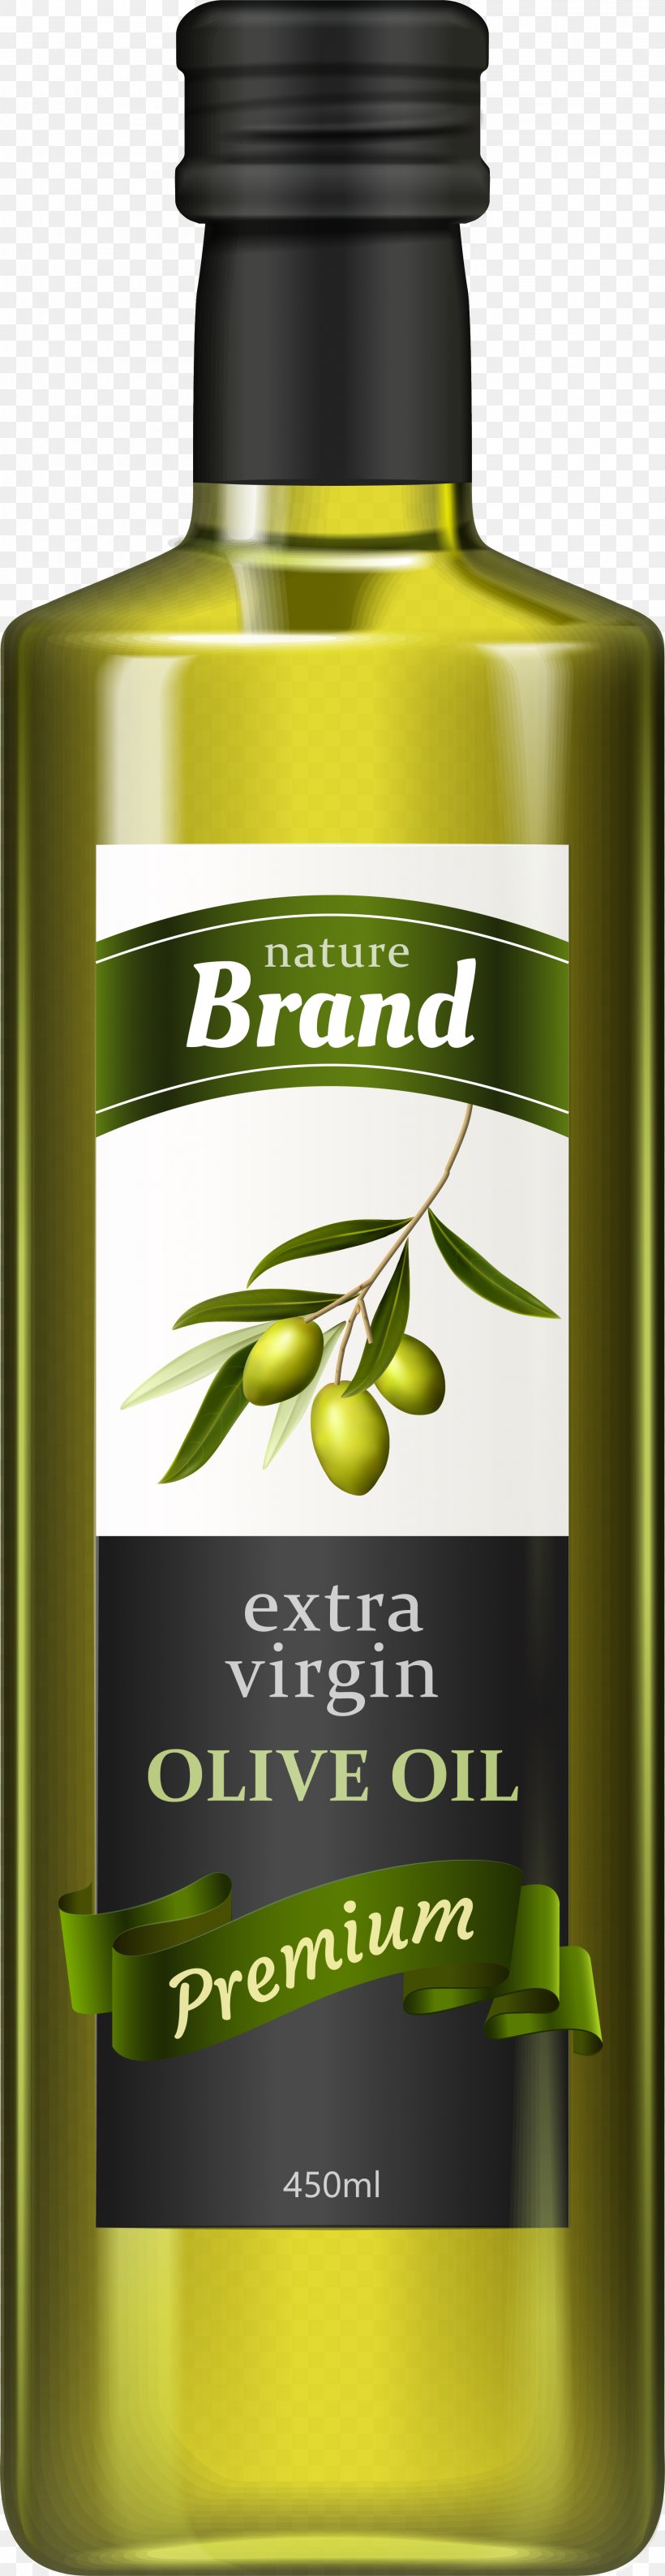 Olive Oil Bottle, PNG, 2001x7752px, Olive Oil, Bottle, Cooking Oil, Extra Virgin Olive Oil, Glass Bottle Download Free